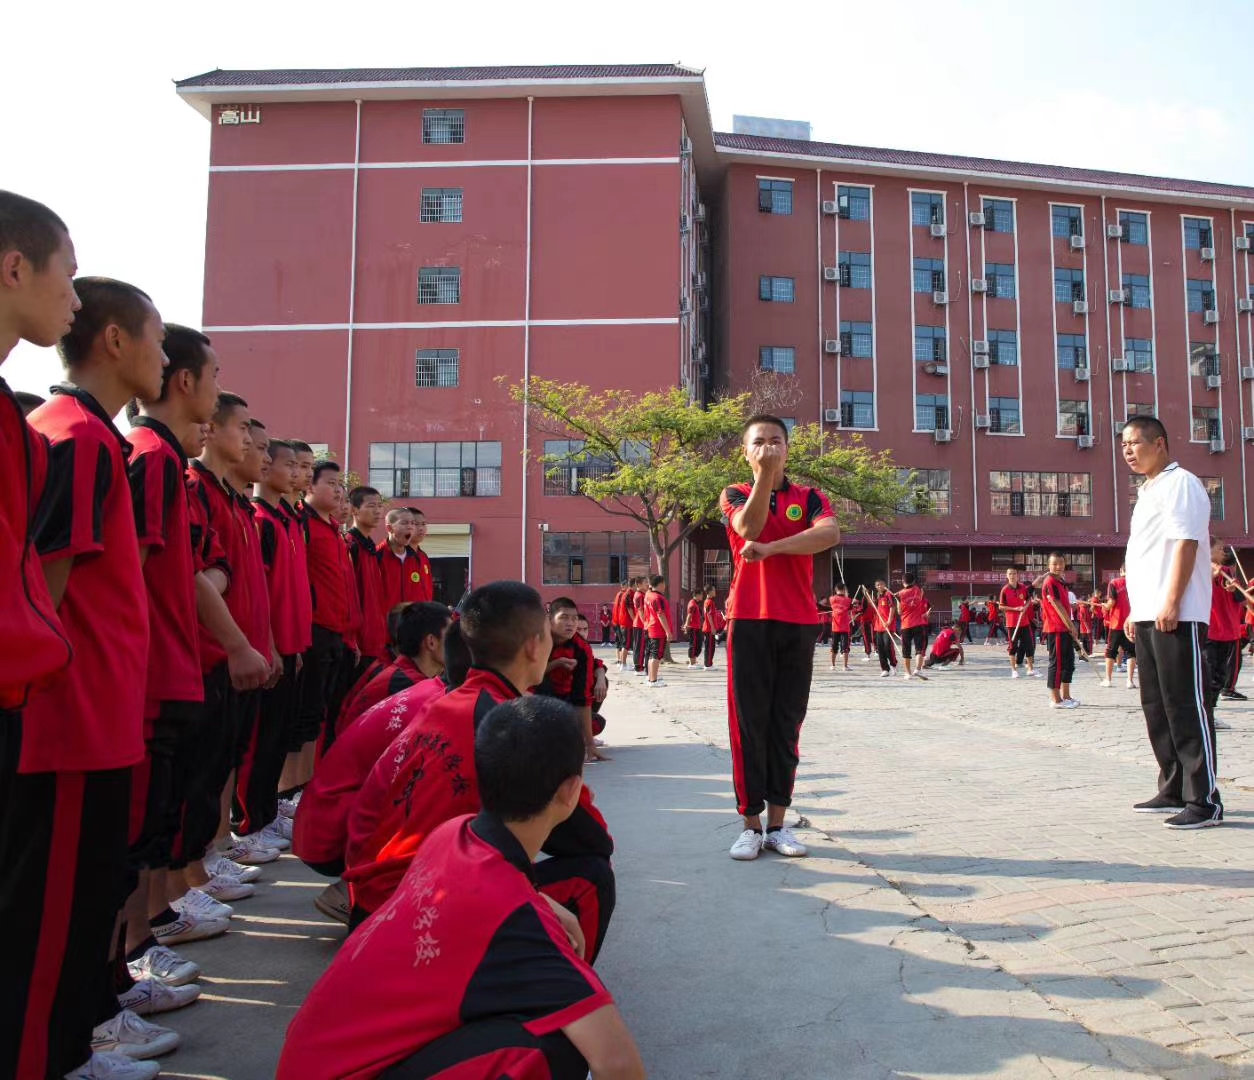 嵩山少林寺武術學校的學員在展示個人武藝